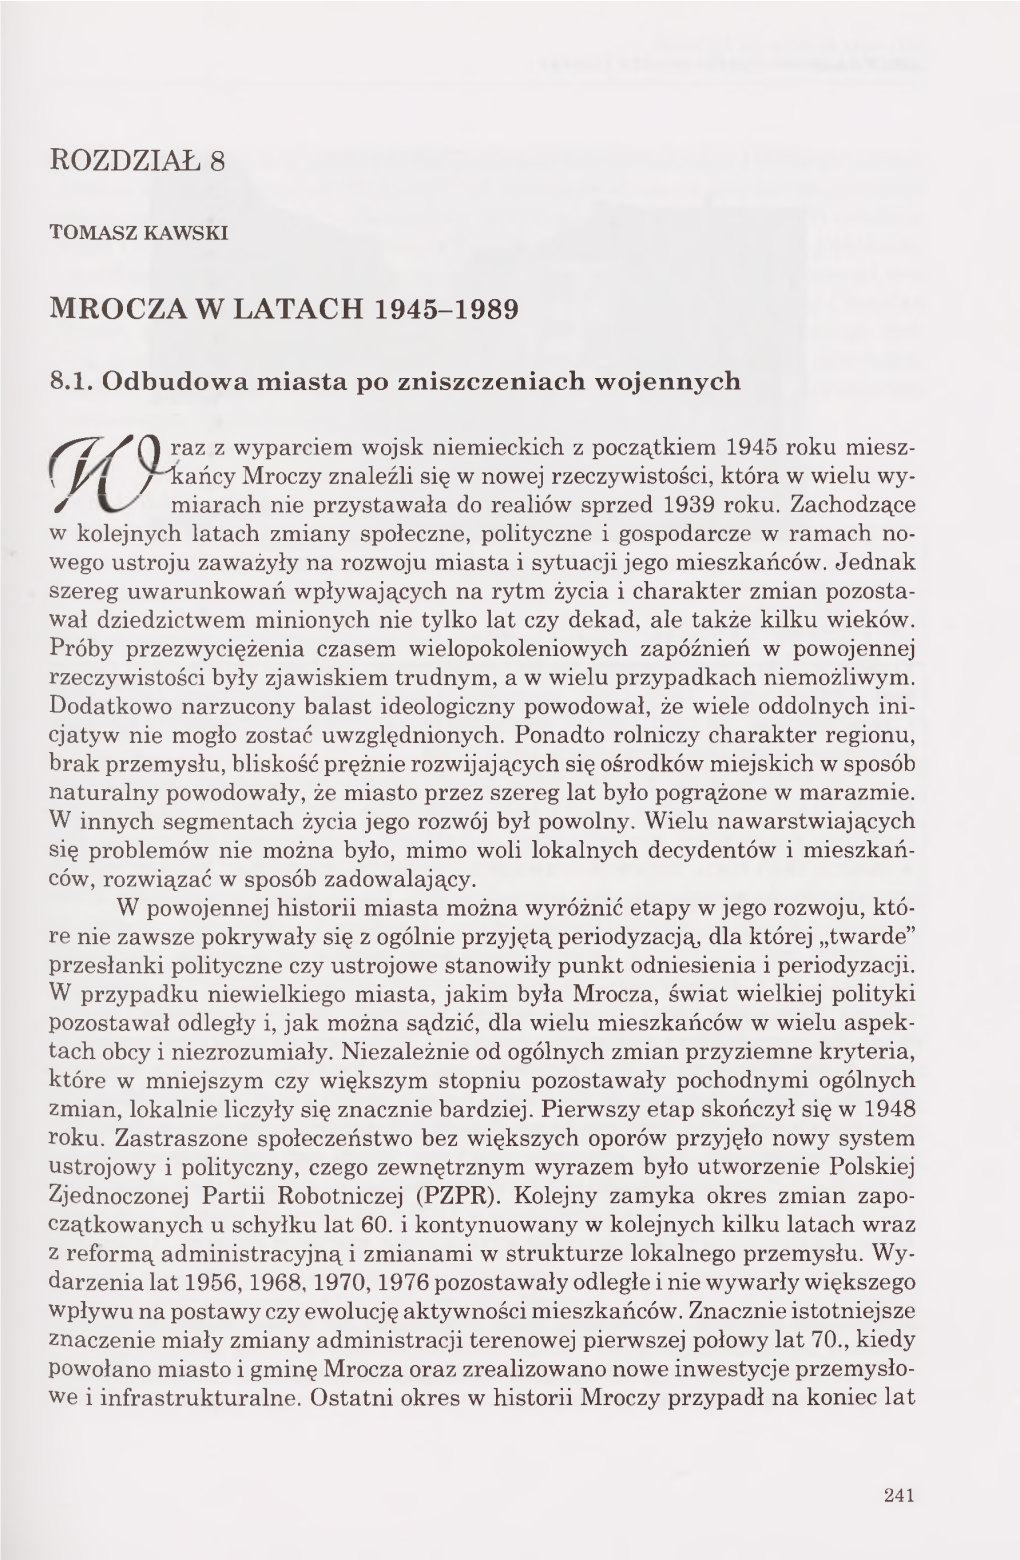 Mrocza W Latach 1945-1989